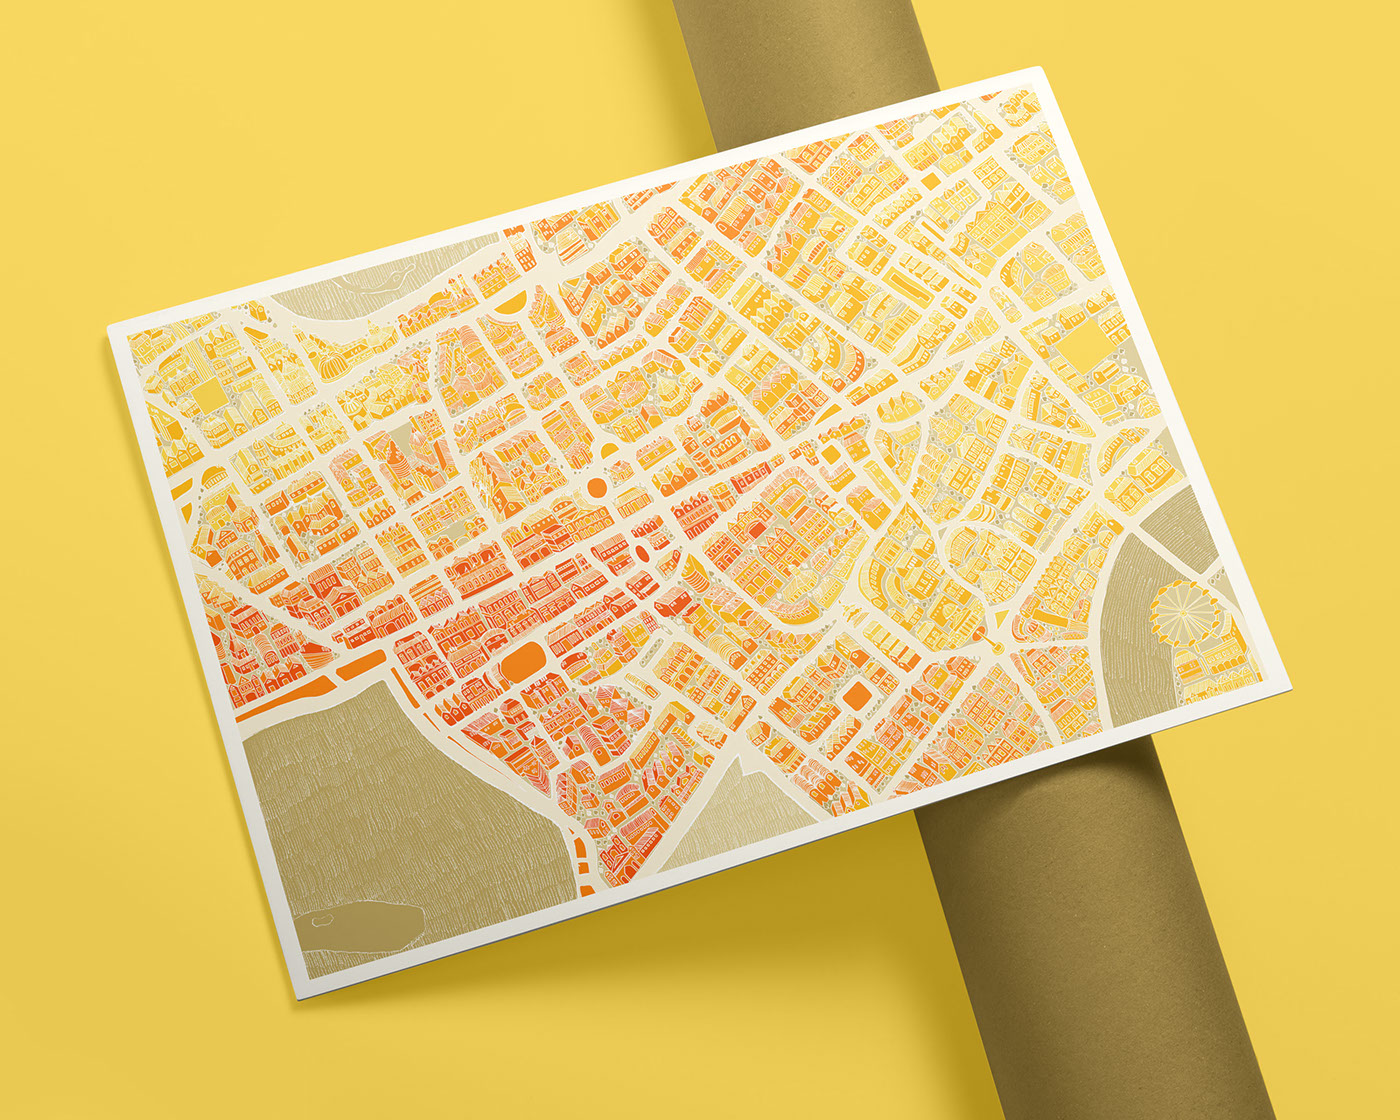 London illustrations city map sovenier Travel handdrawn adobe